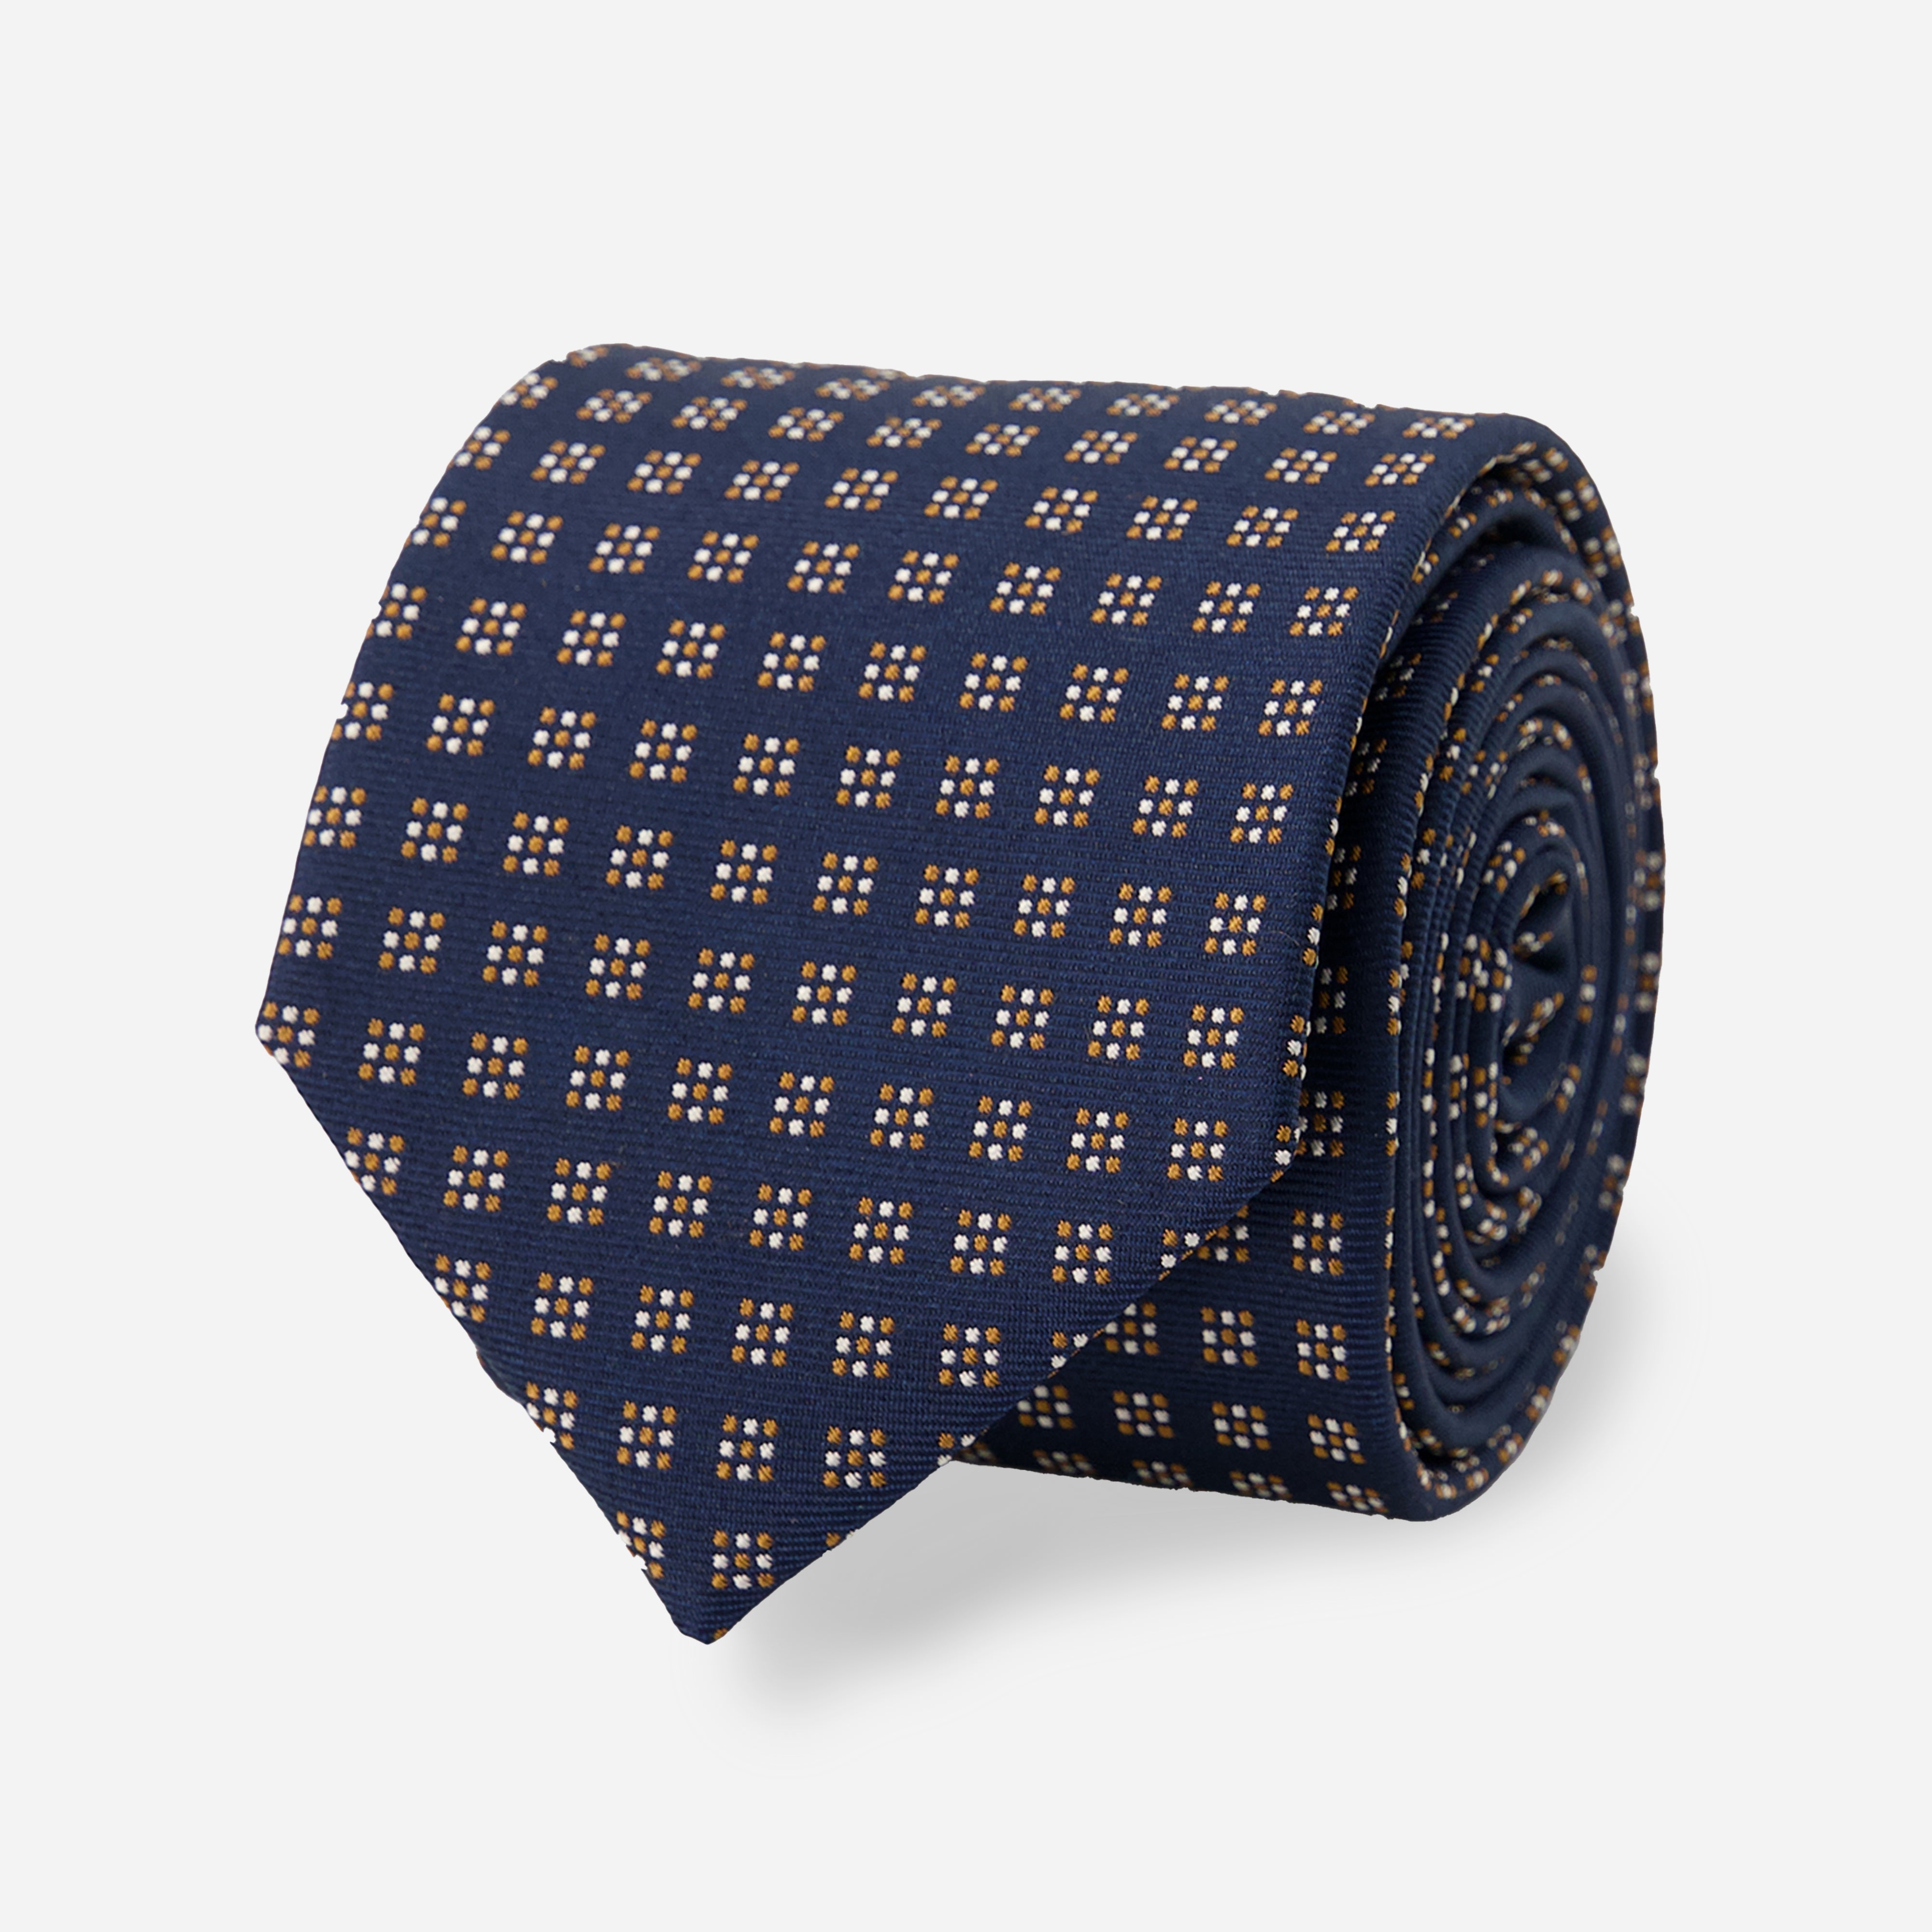 Square Echo Navy Tie | Silk Ties | Tie Bar